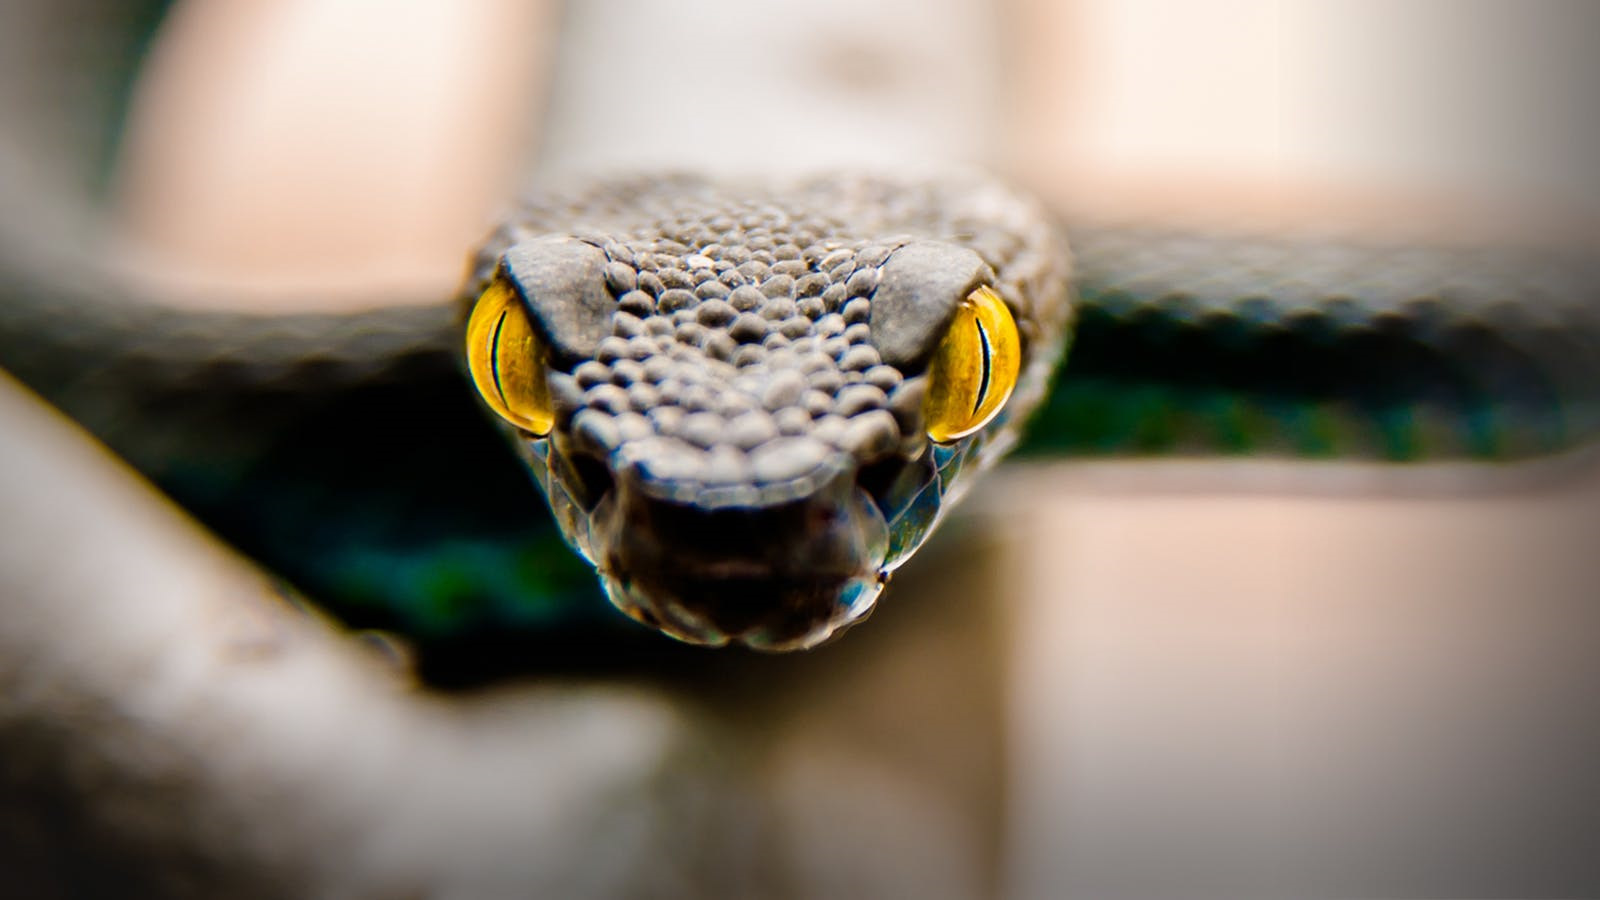 Змея с желтыми глазами